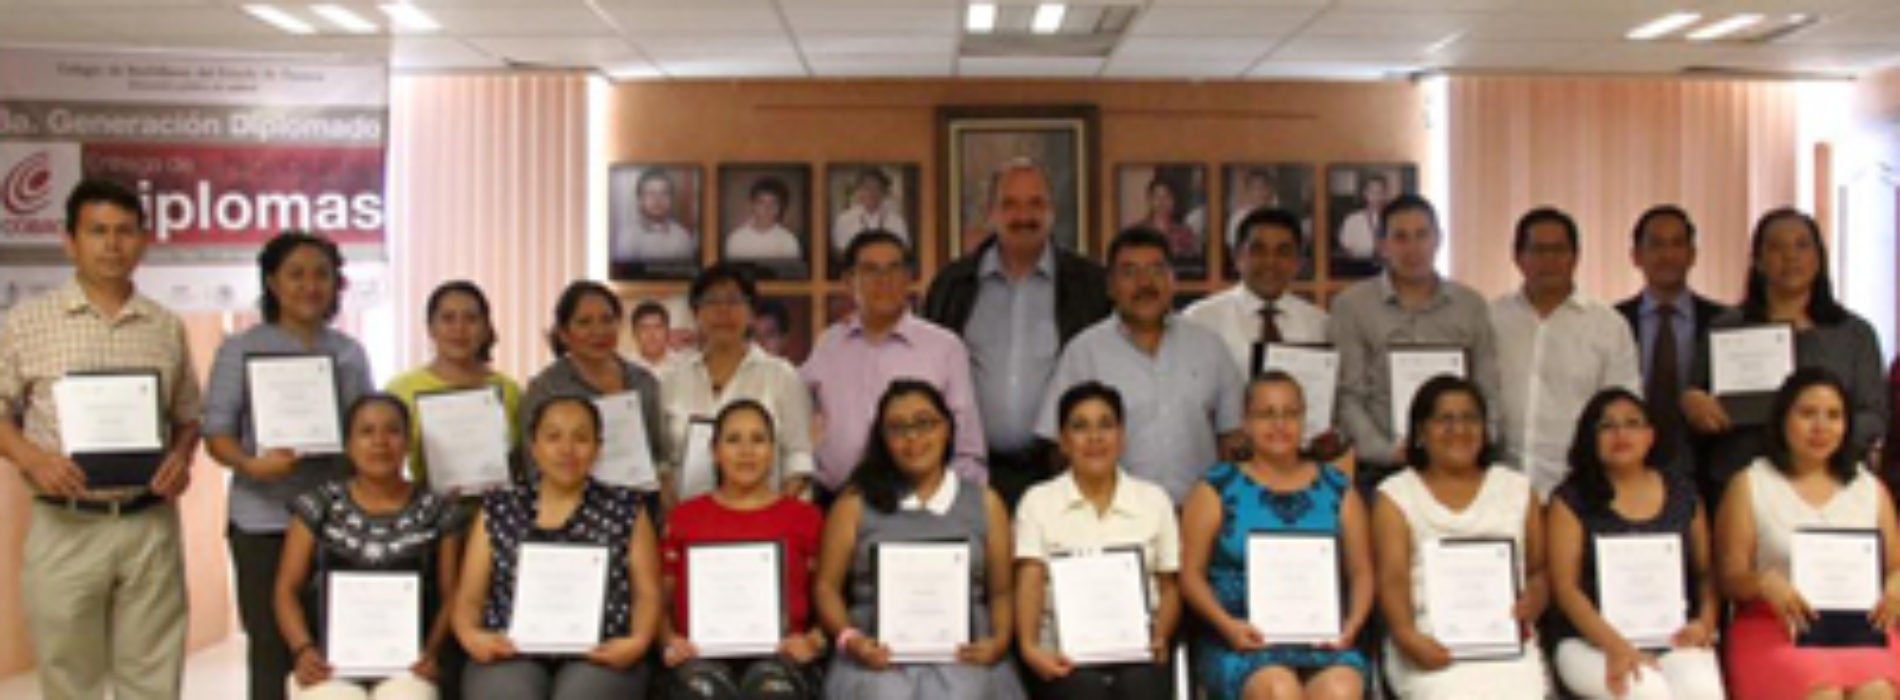 Docentes del COBAO trabajan desde las aulas para transformar la educación de Oaxaca: Jorge Vilar